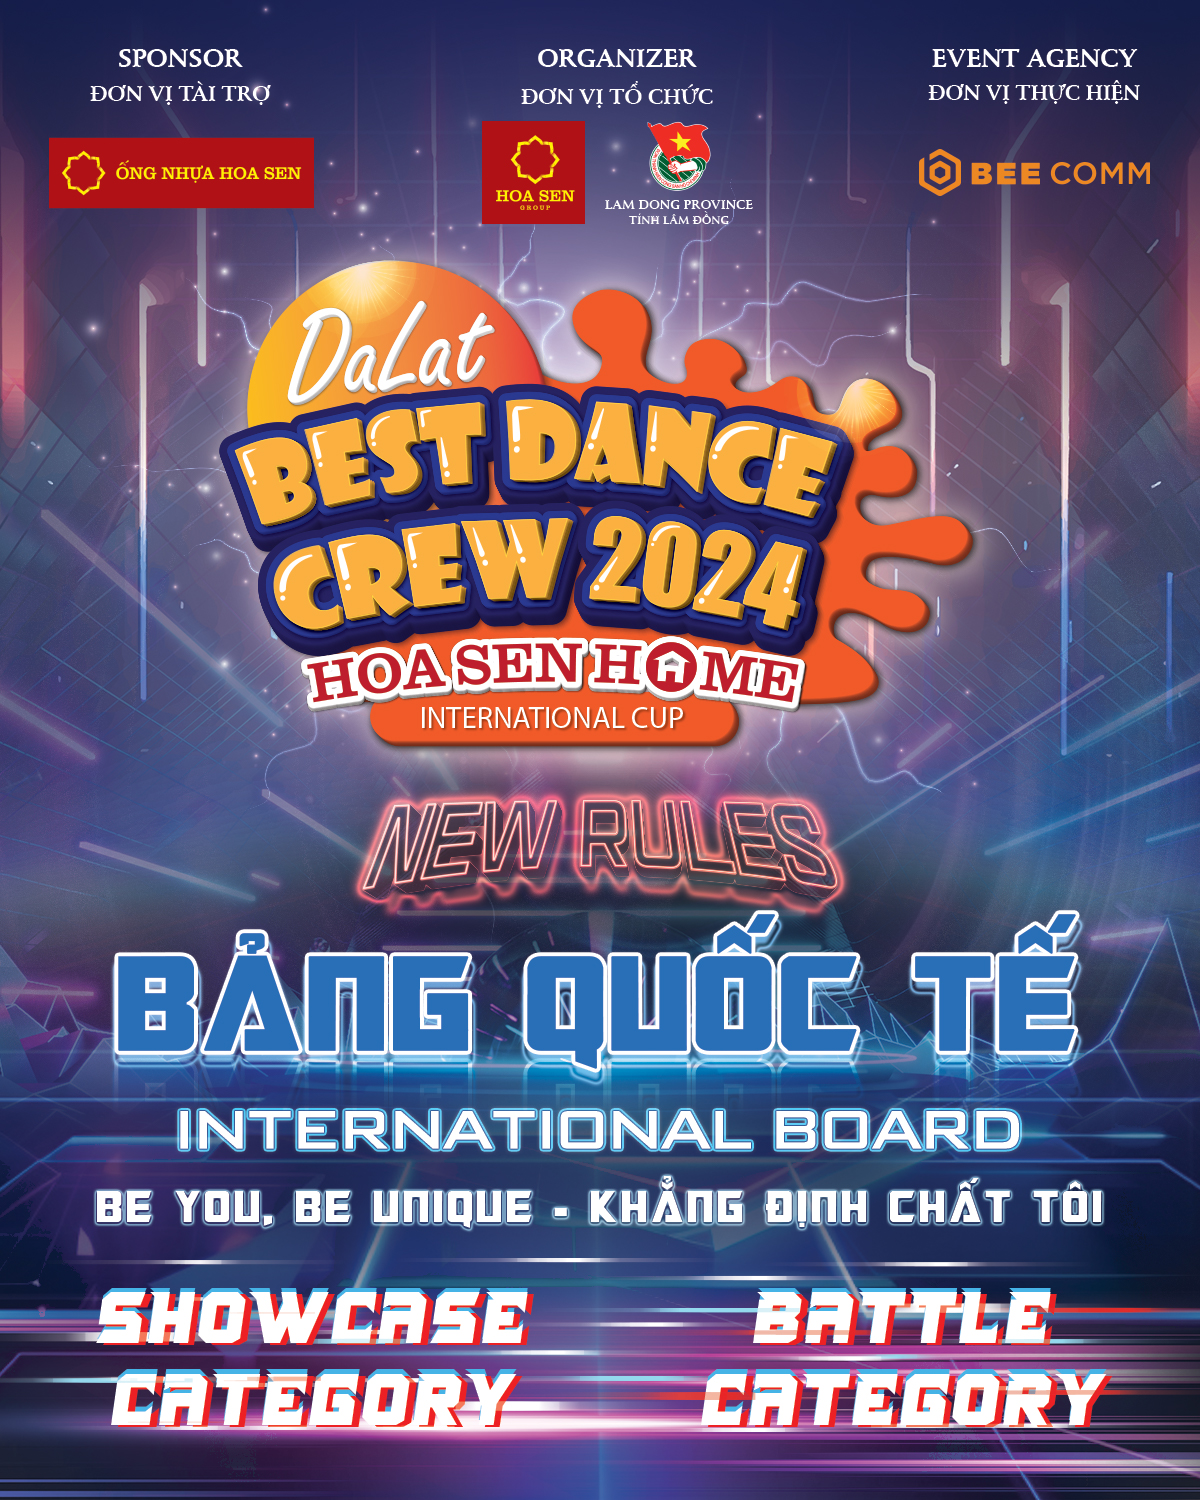 Bảng Quốc tế Dalat Best Dance Crew 2024 - Hoa Sen Home International Cup Banner